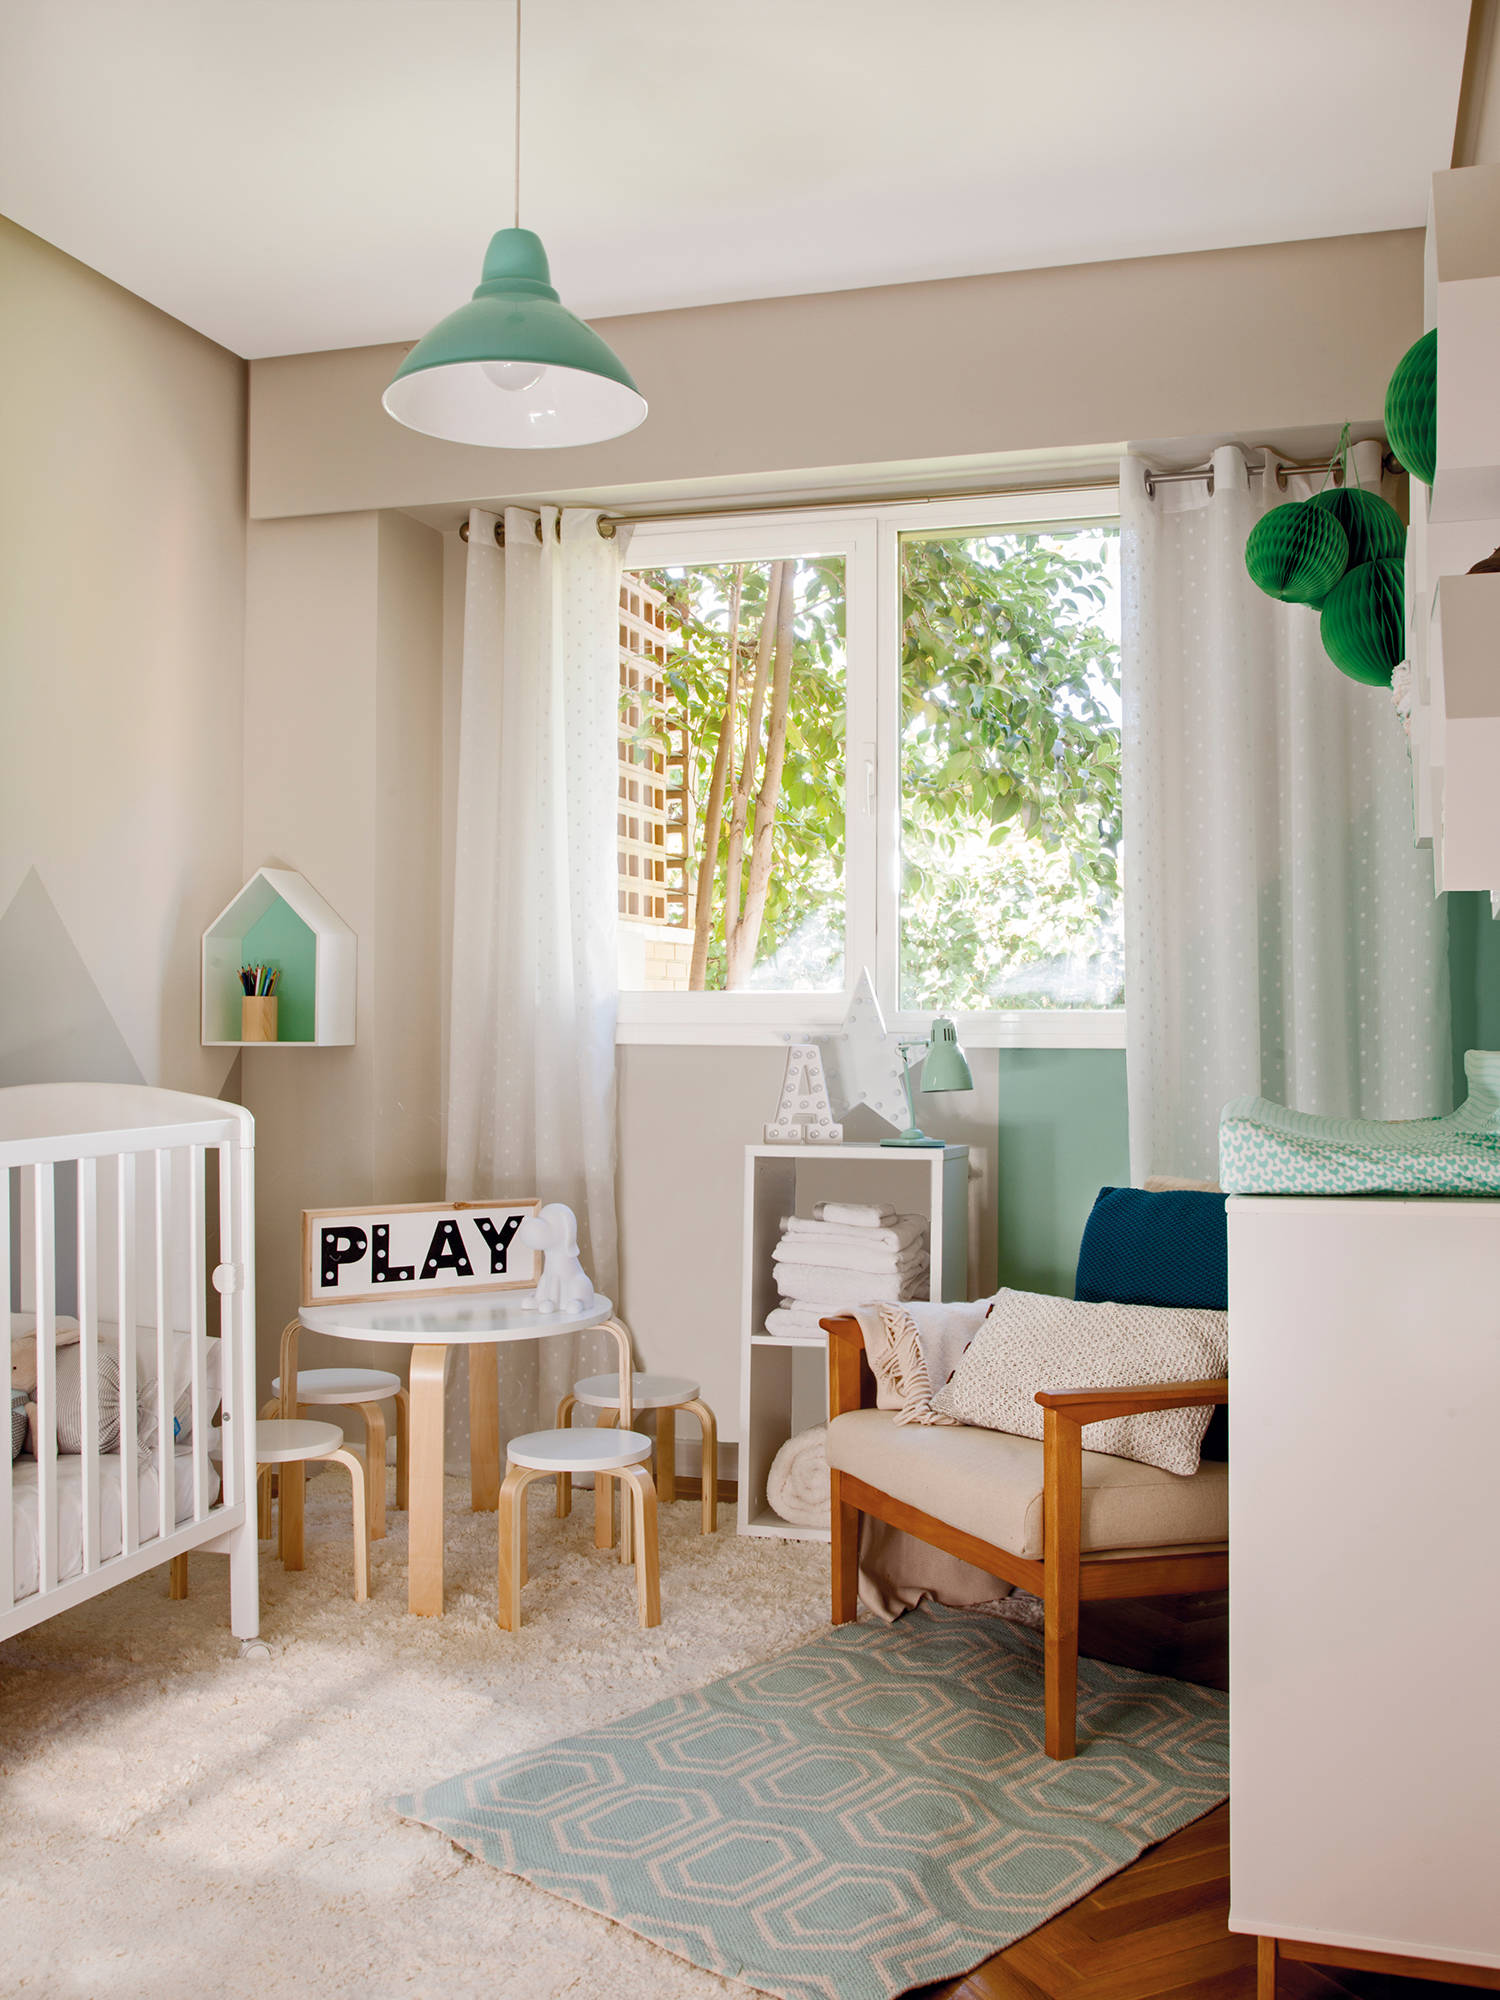 Dormitorio de bebé con muebles en blanco y detalles en verde mint. 00458716b